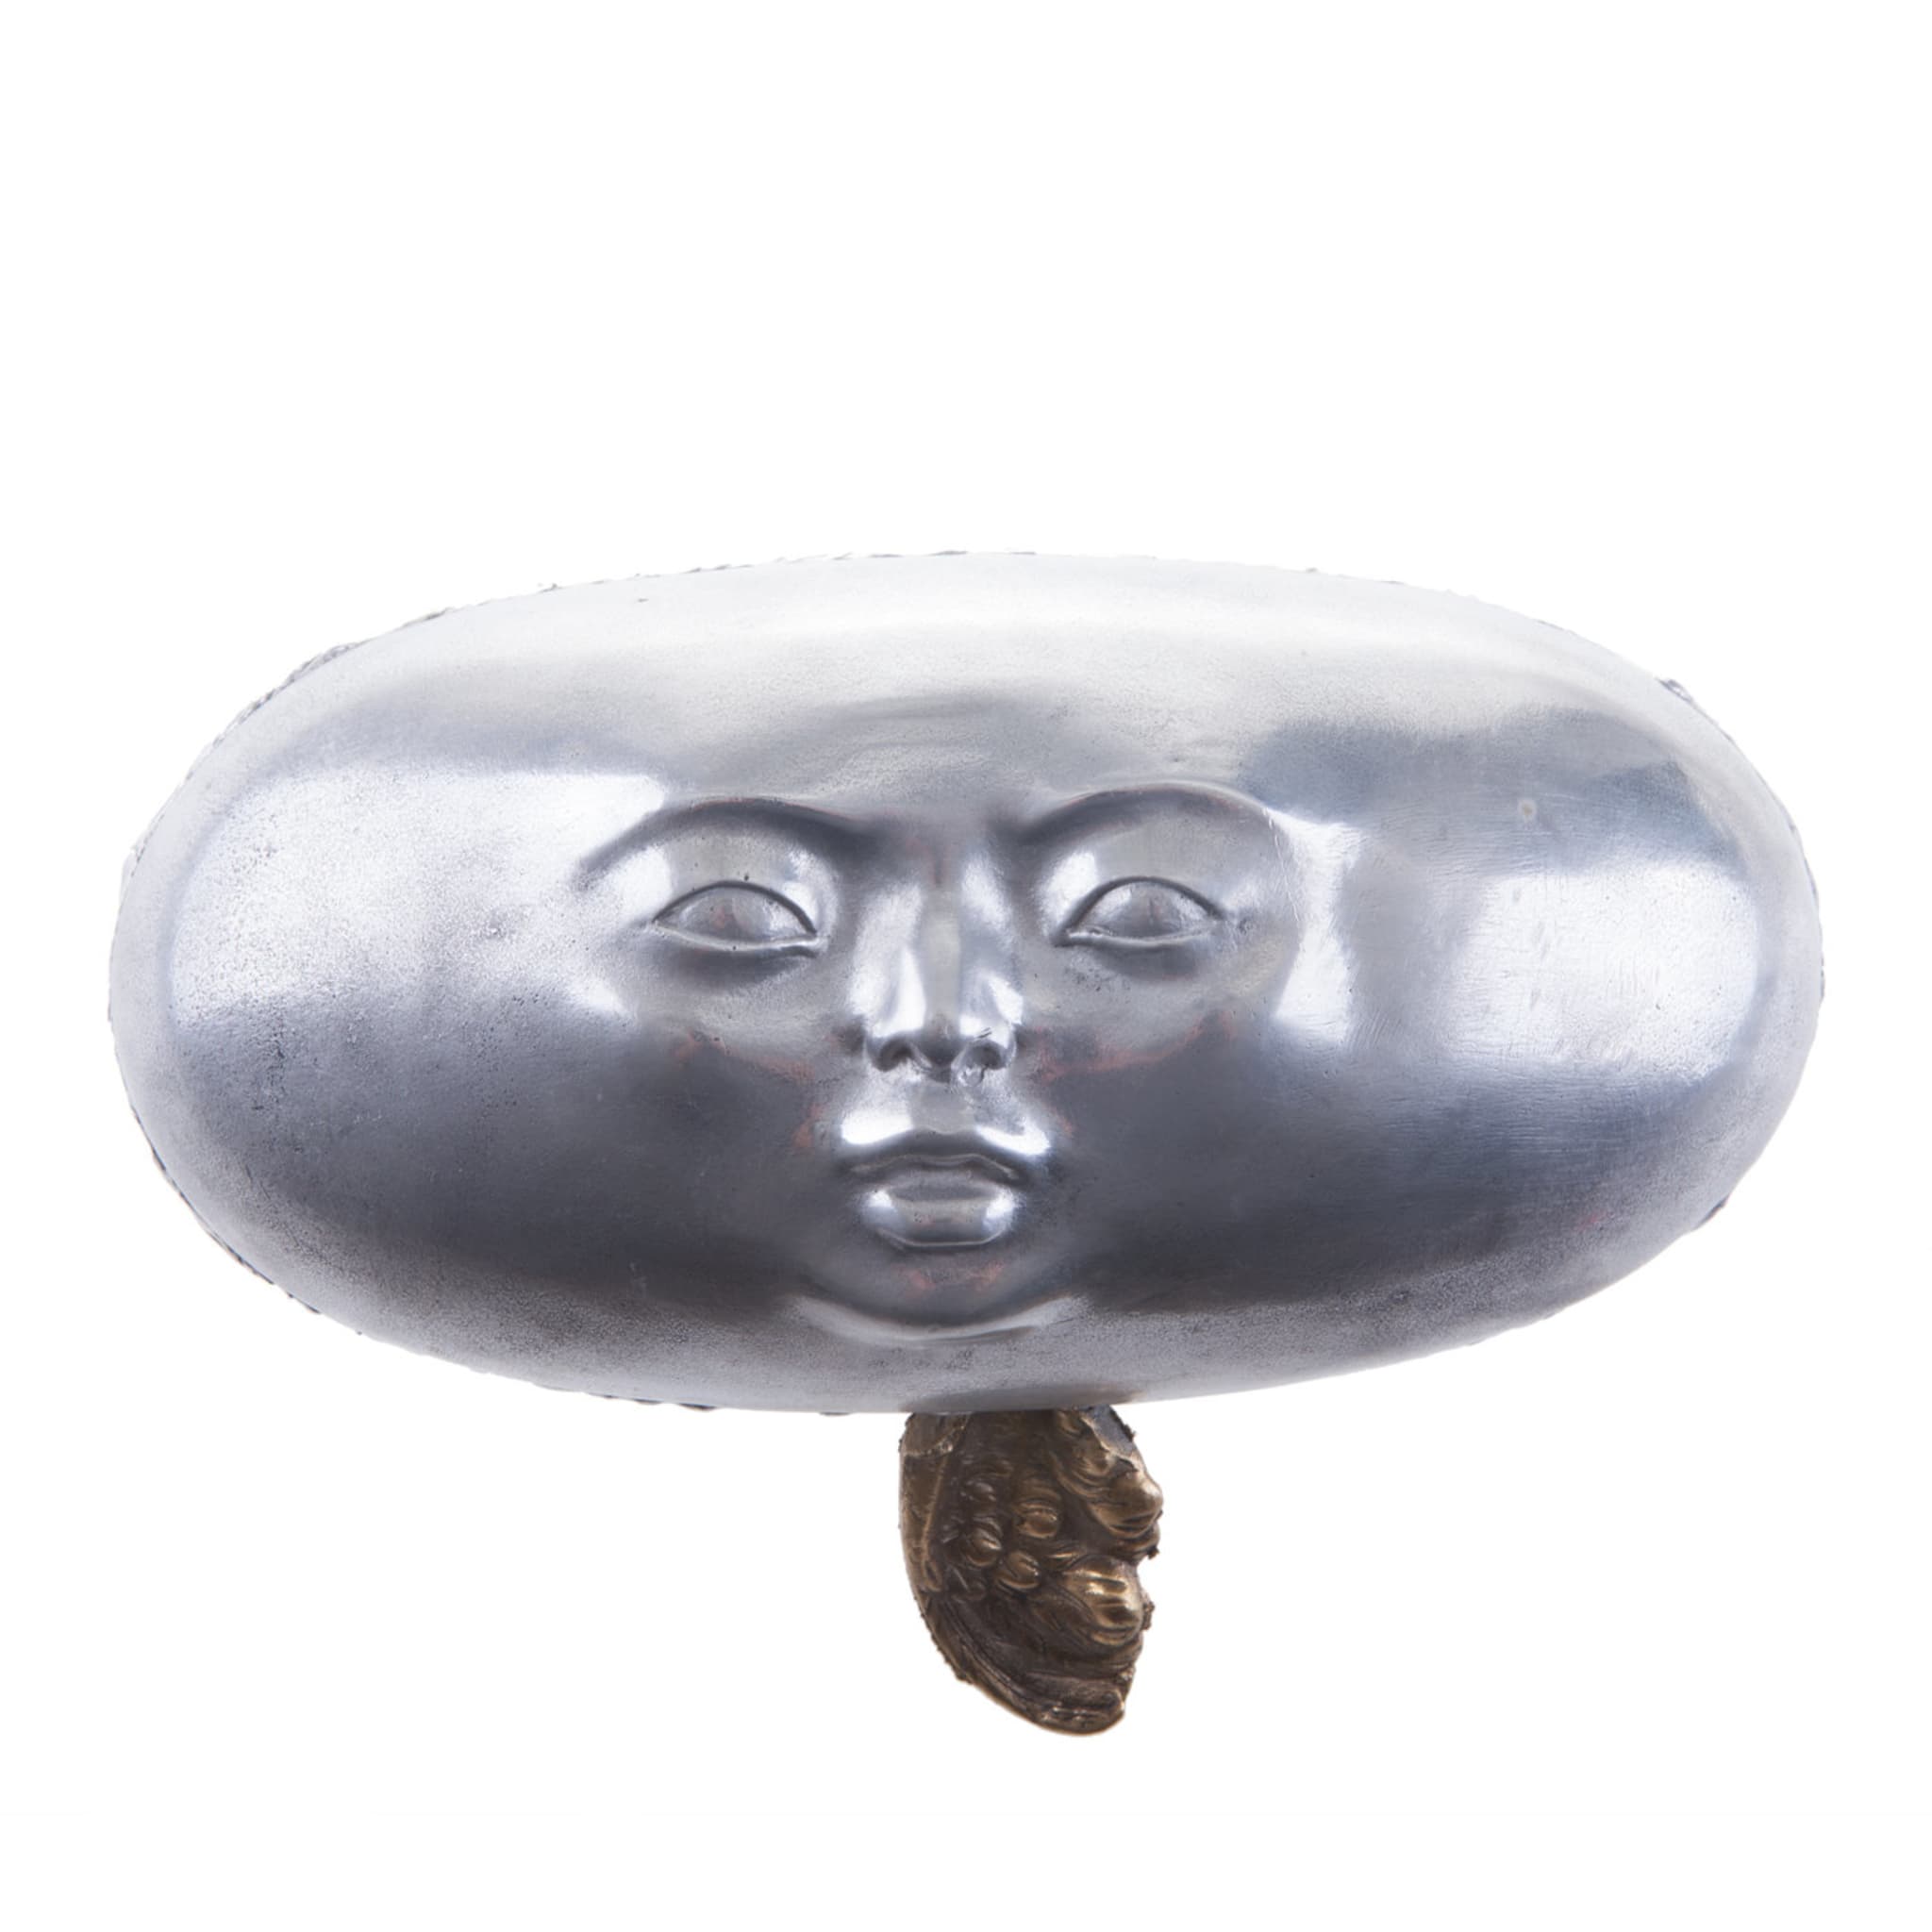 La scultura in pillole del volto umano - Vista principale